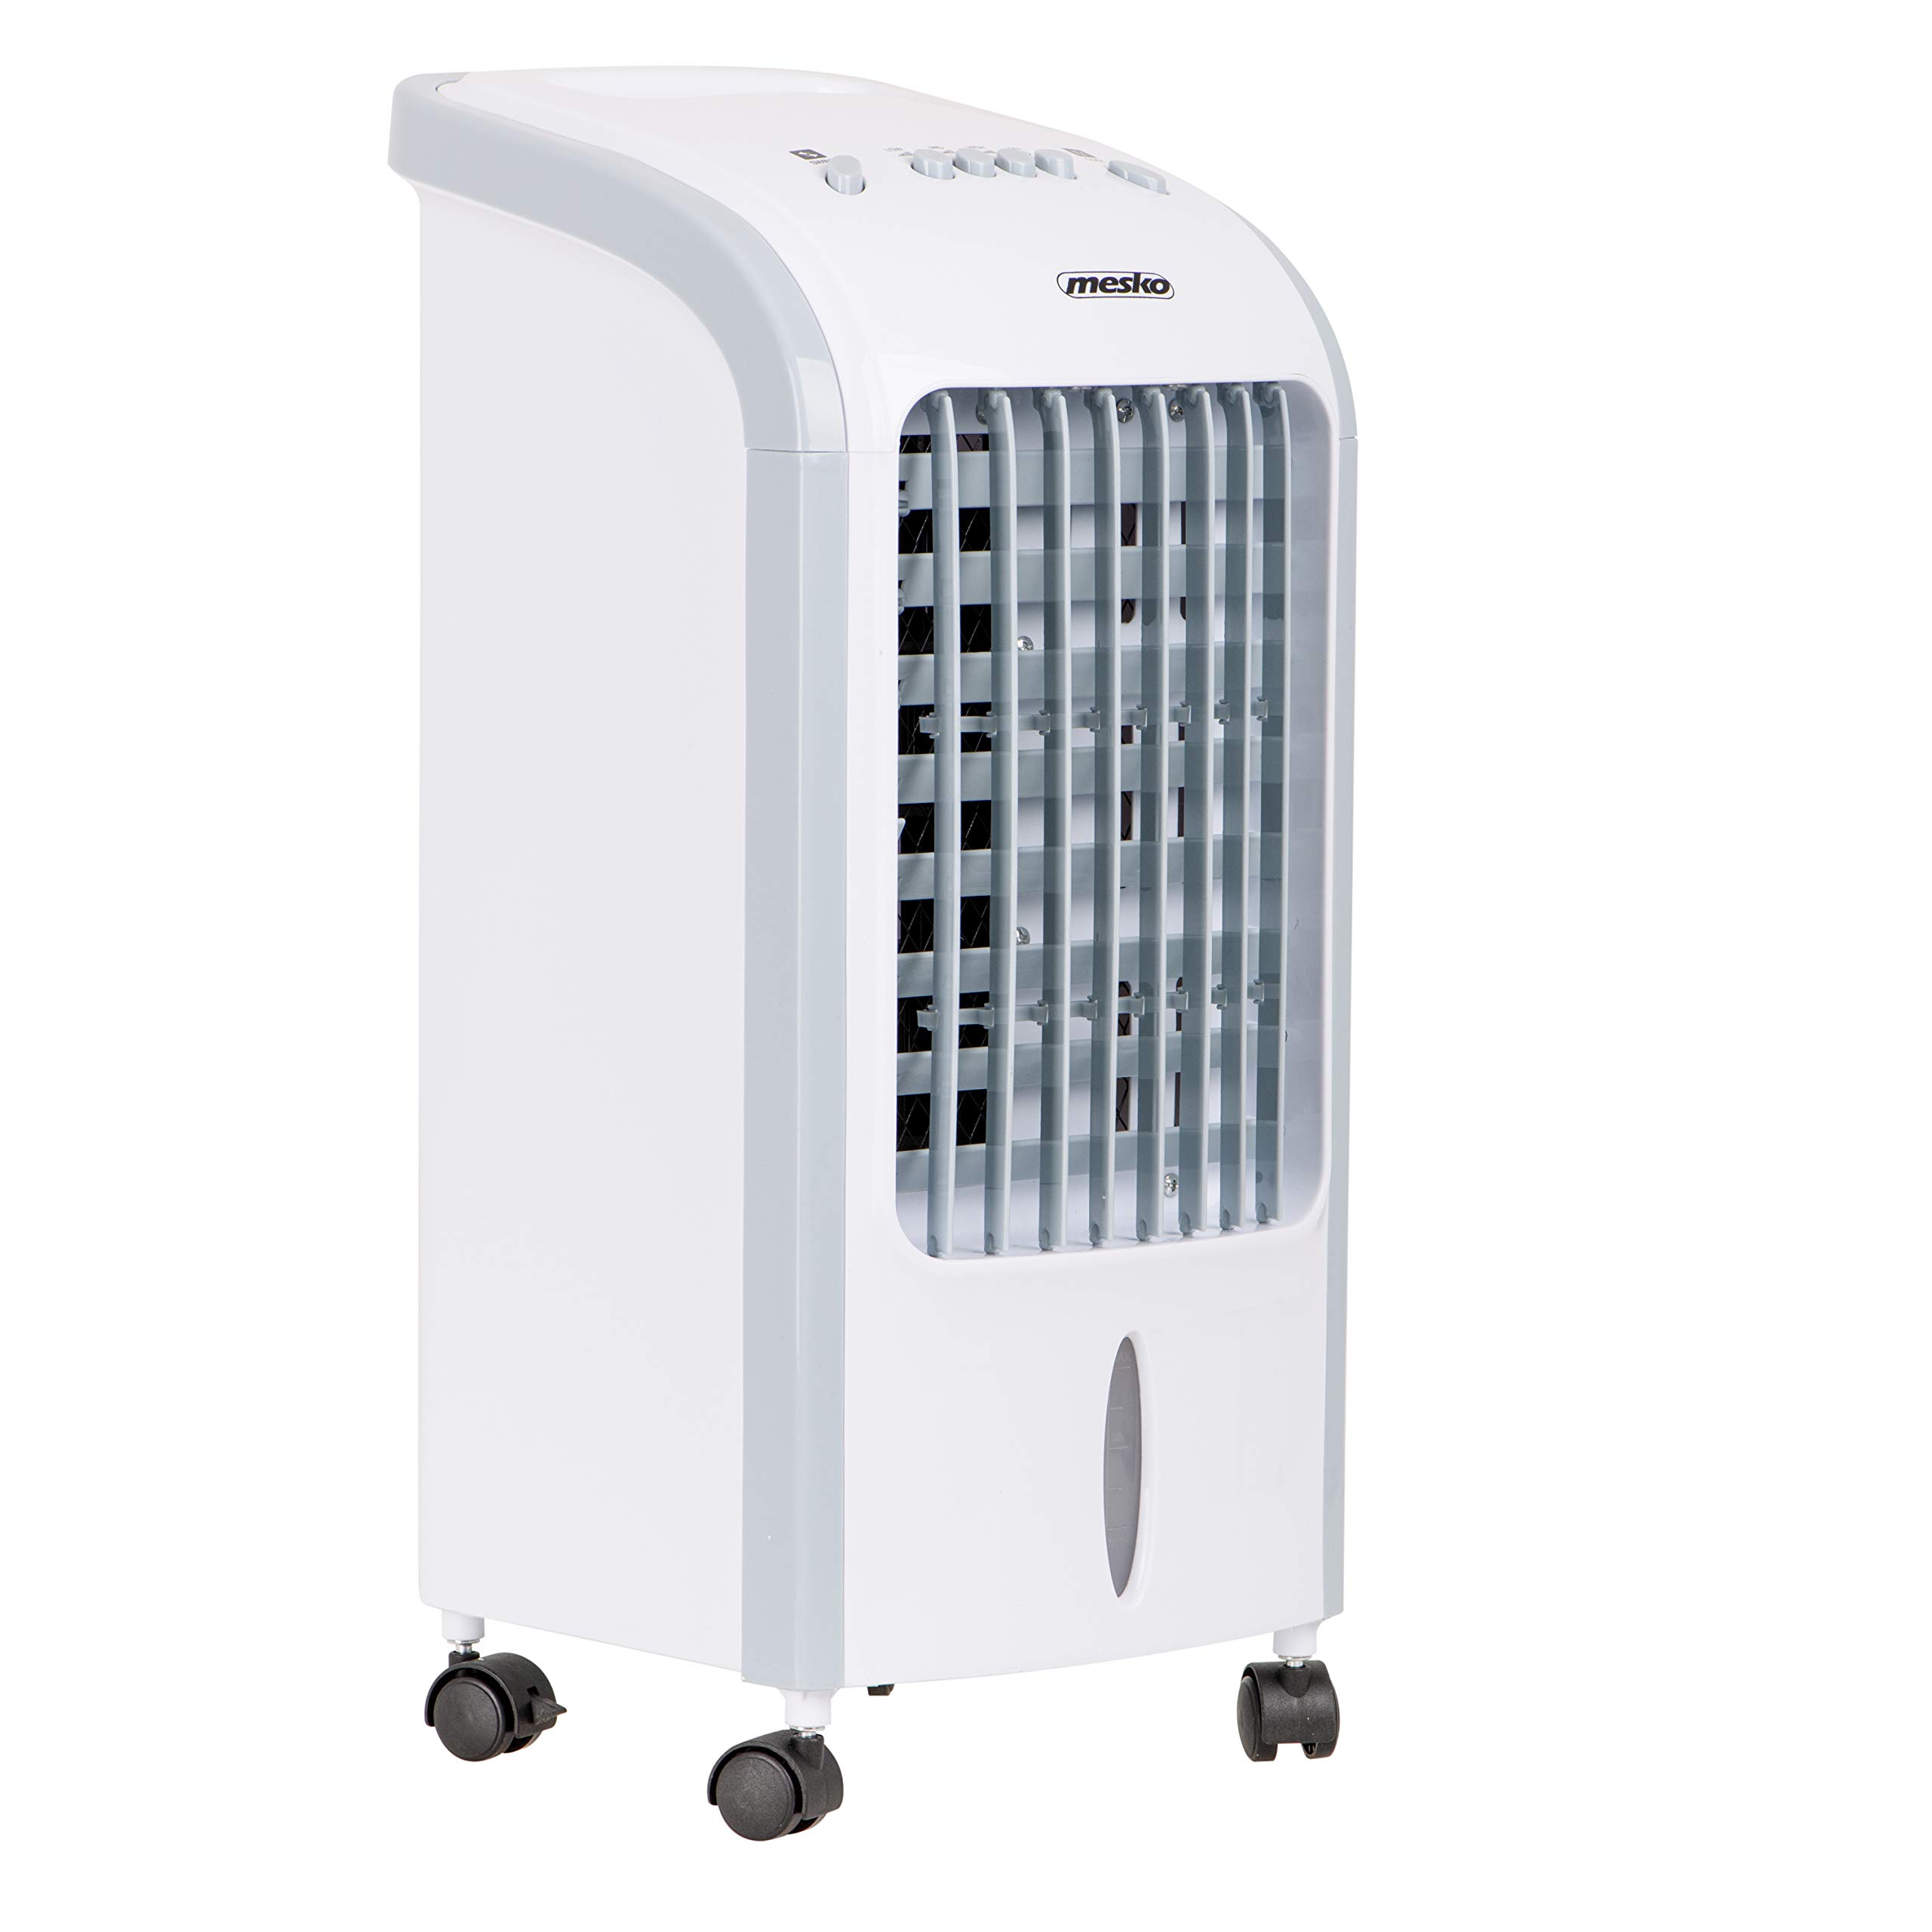 Mesko MS7914 Luftkühler, Ventilator, Luftbefeuchter, 3 in 1, energiesparend, 75 Watt, tragbar, 3 Leistungsstufen, 4 Liter, Weiß/Grau